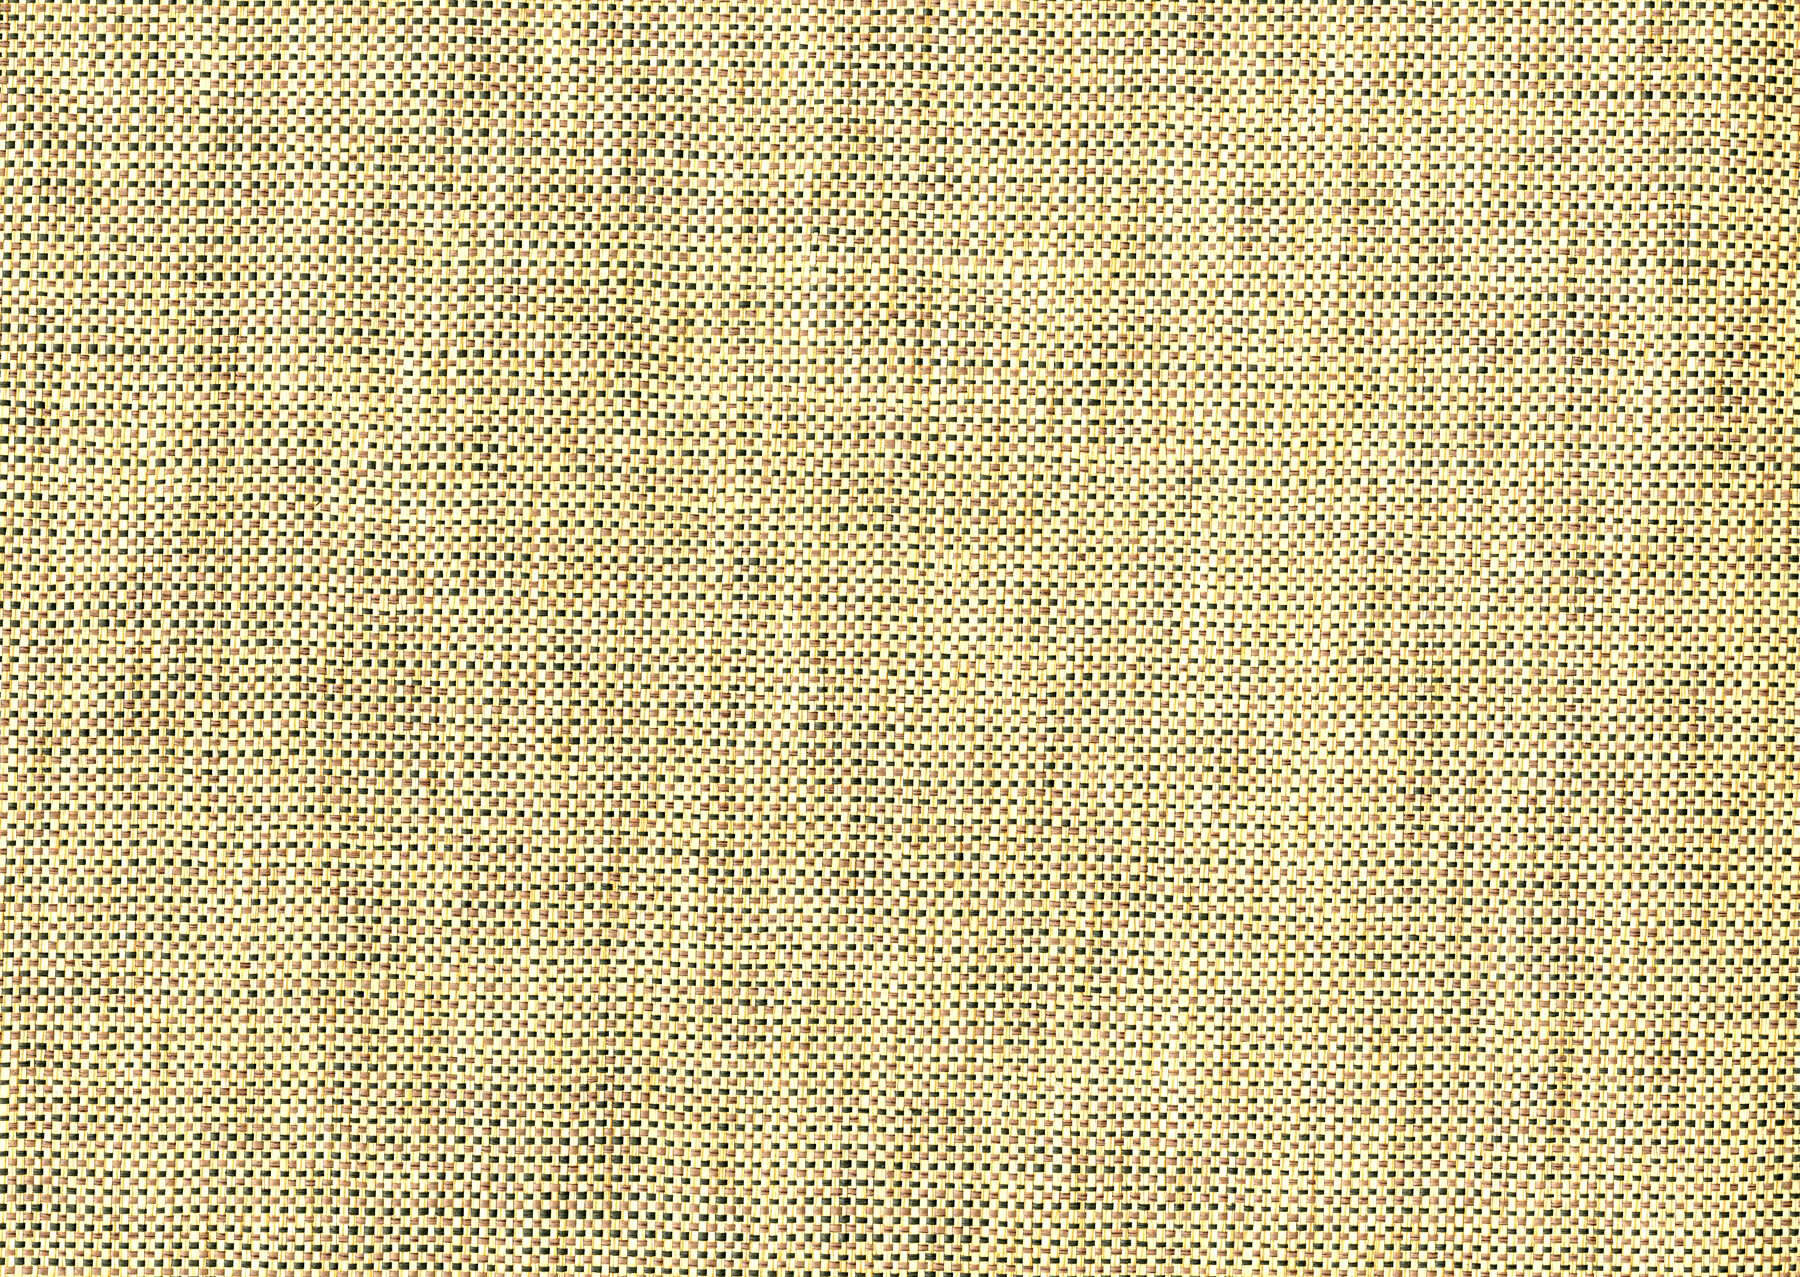 Gracie Oaks Jürn Grass Cloth Wallpaper Wayfair